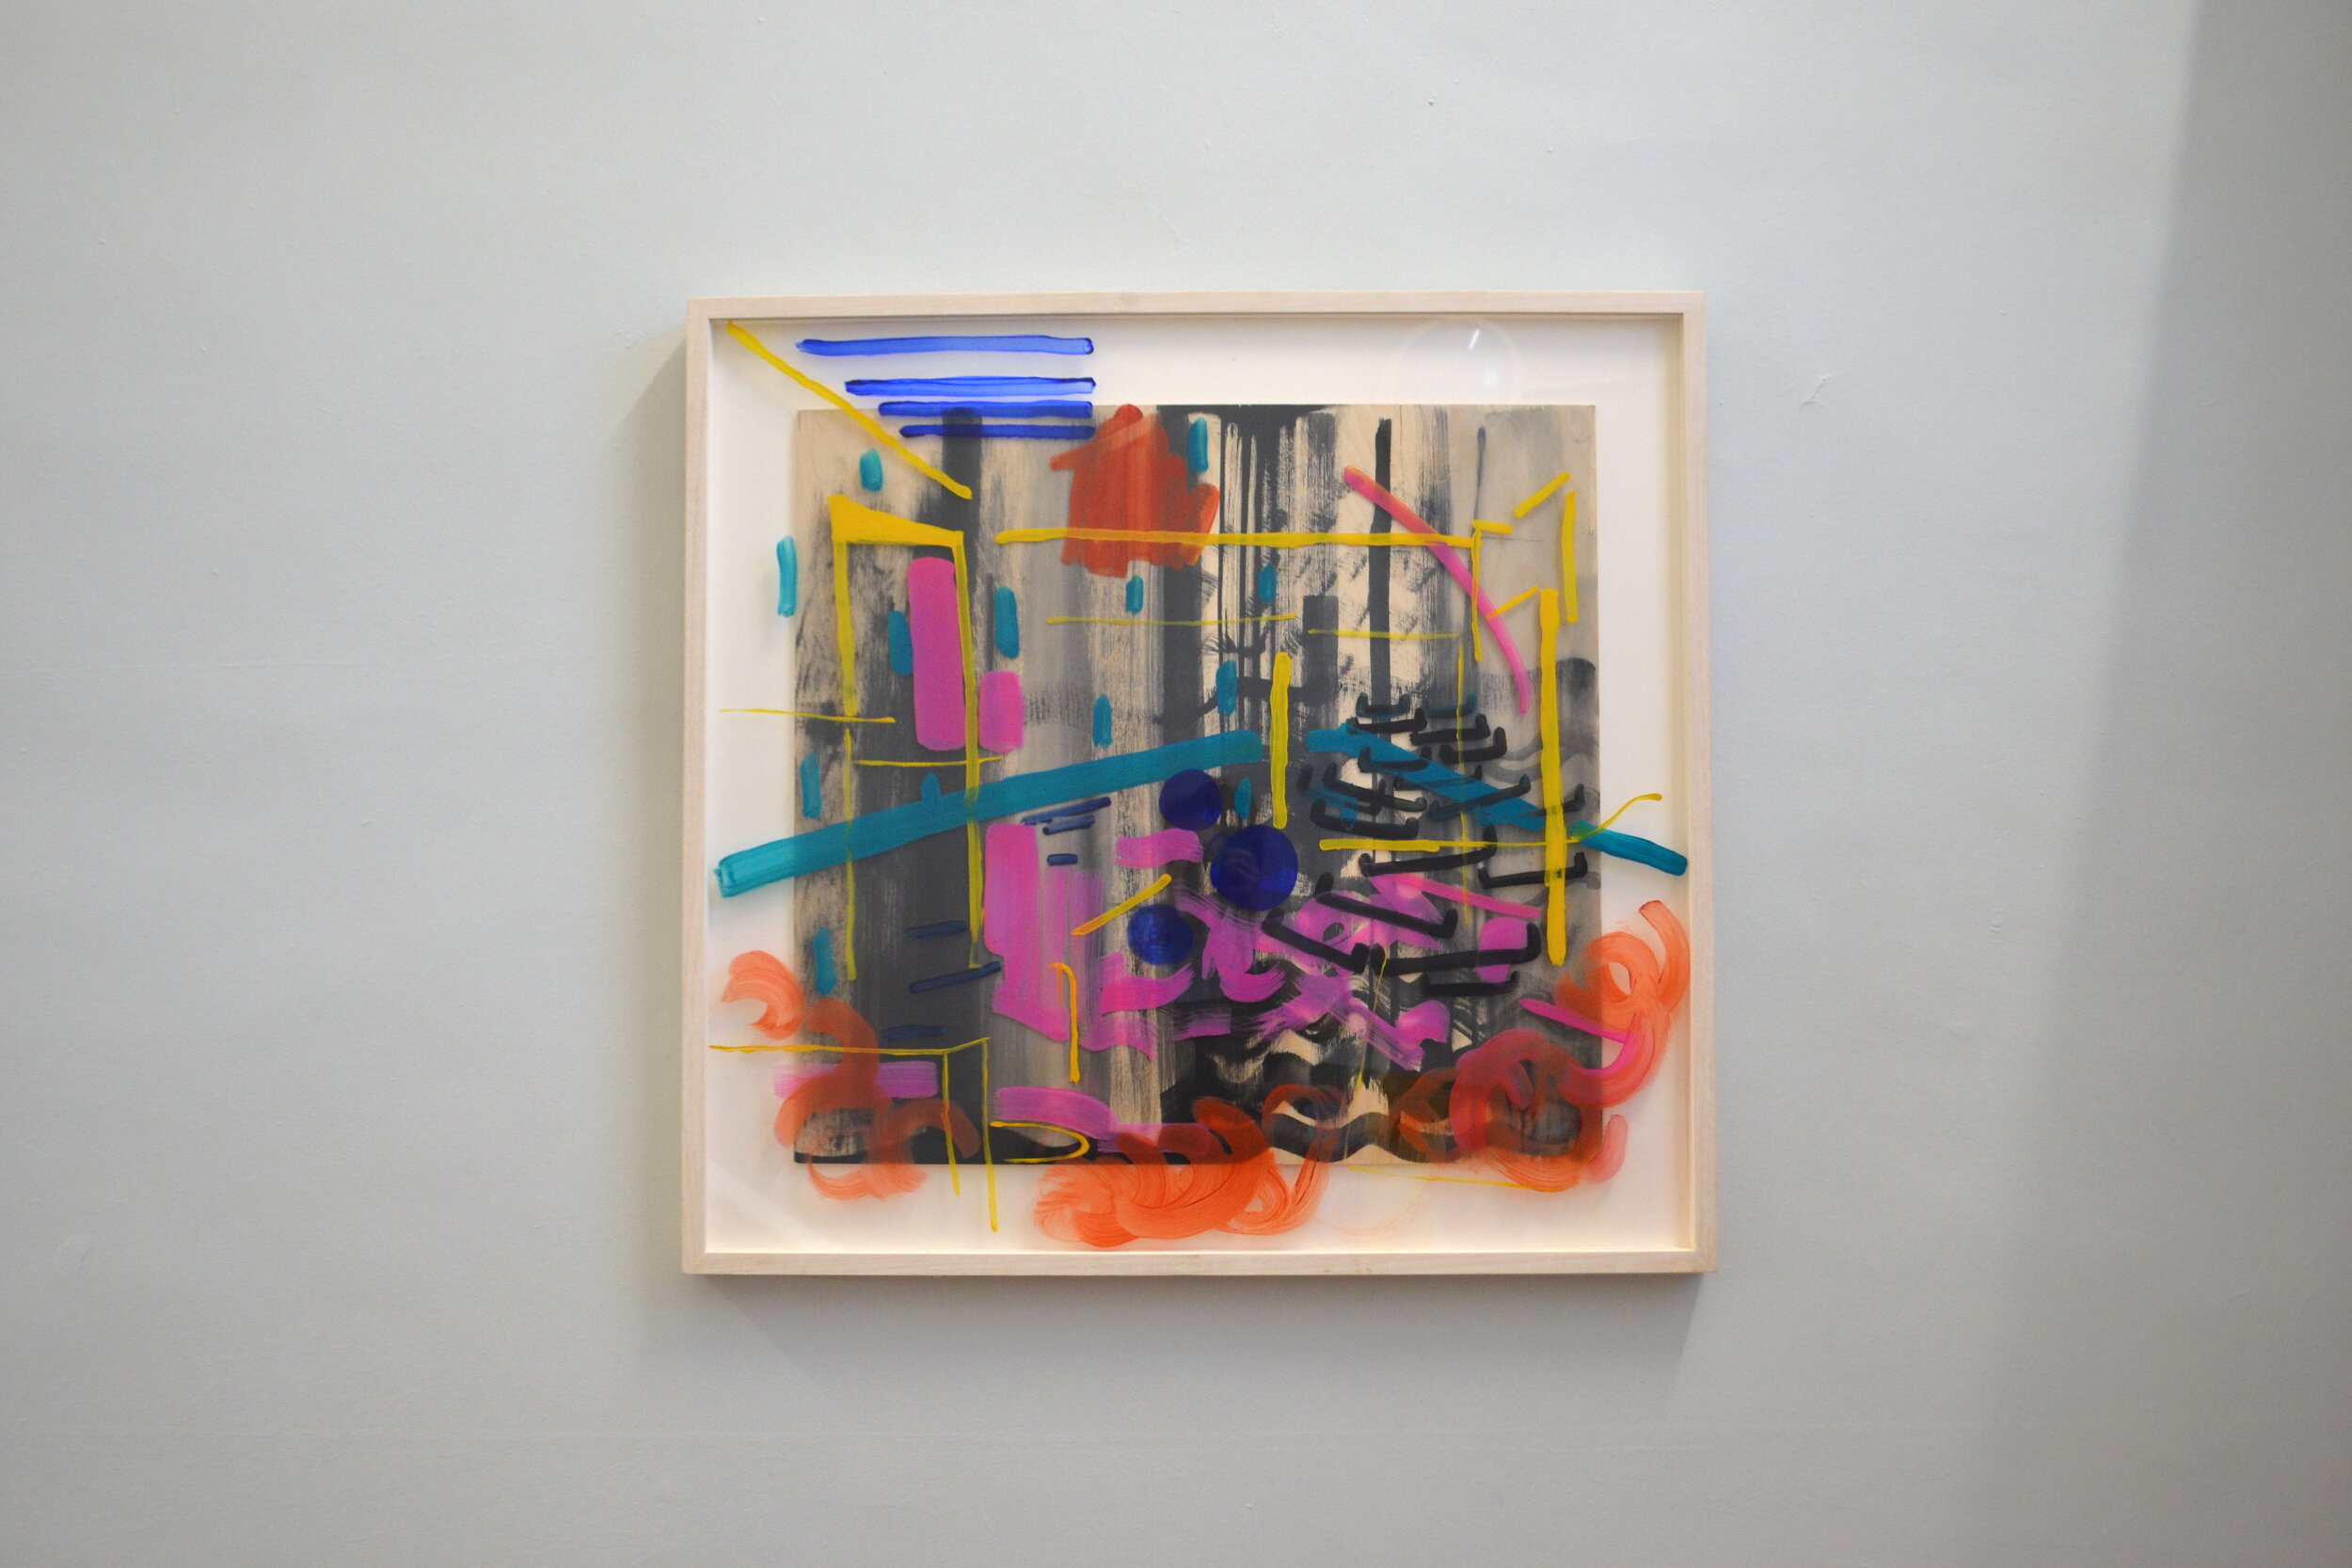 Coloured space, Black Curtain, (2018), Oil on Board, acrylic on glass, framed. 90 x 86cm